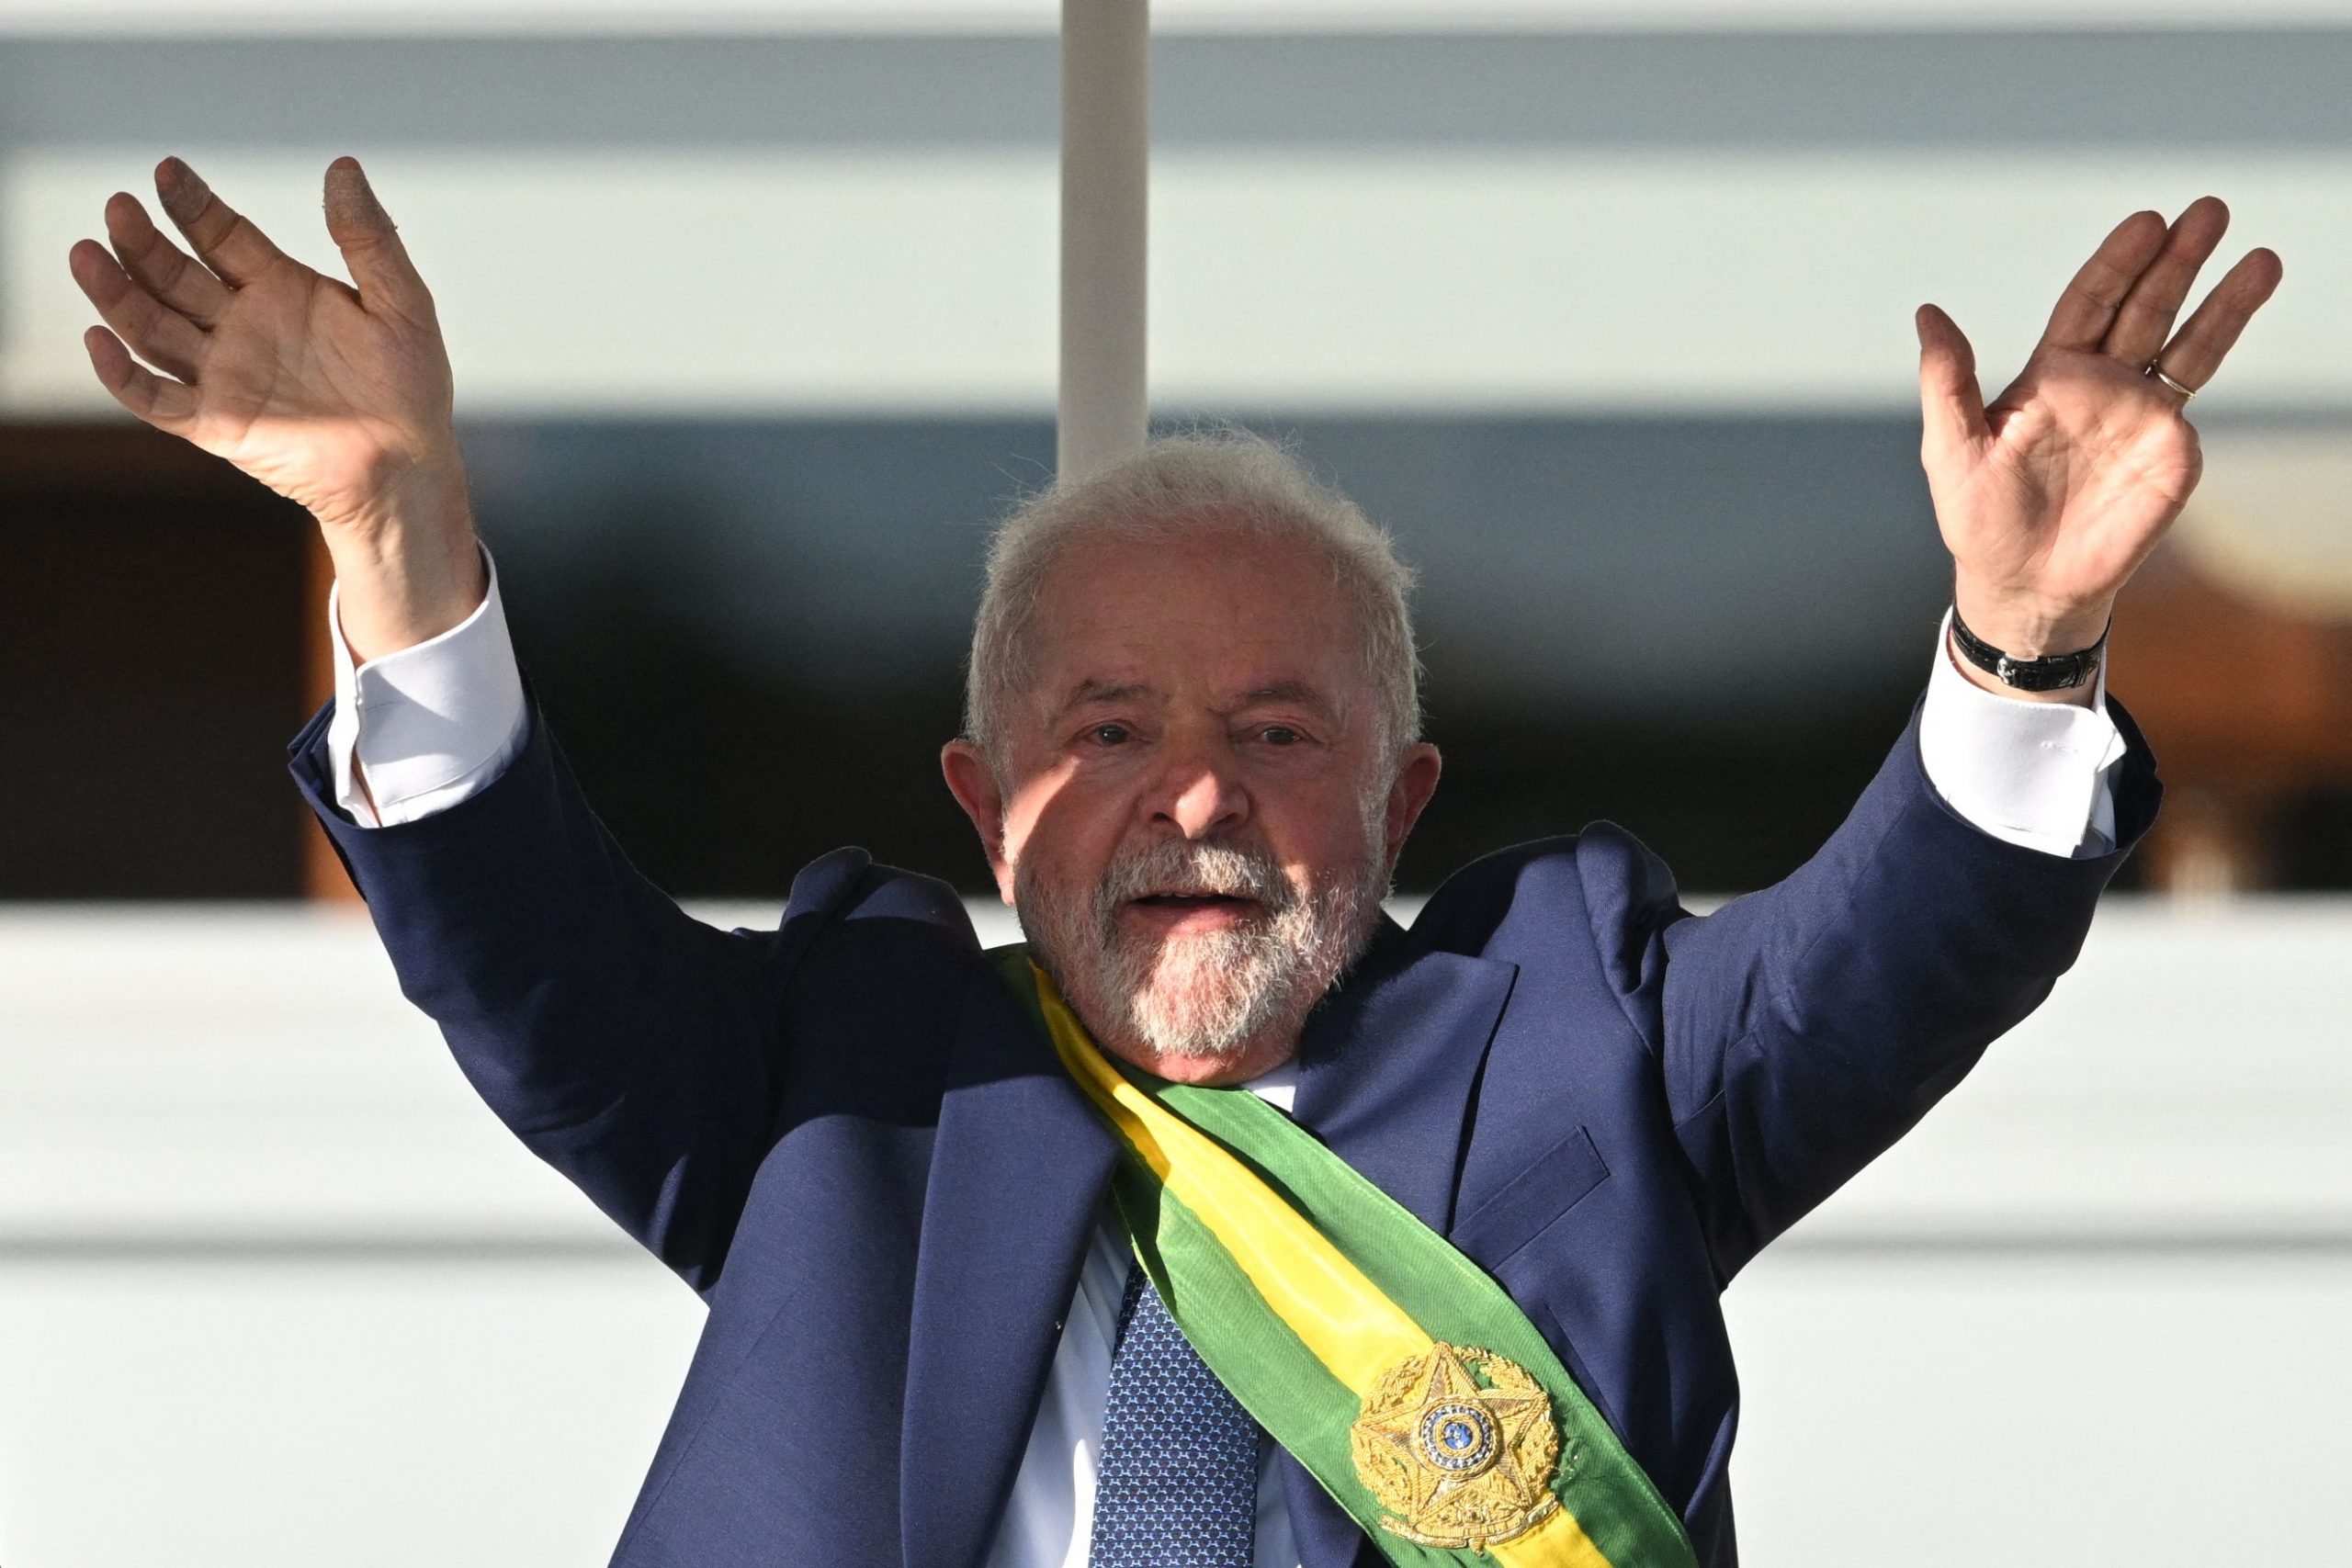 习近平致函祝贺卢拉就任巴西总统 